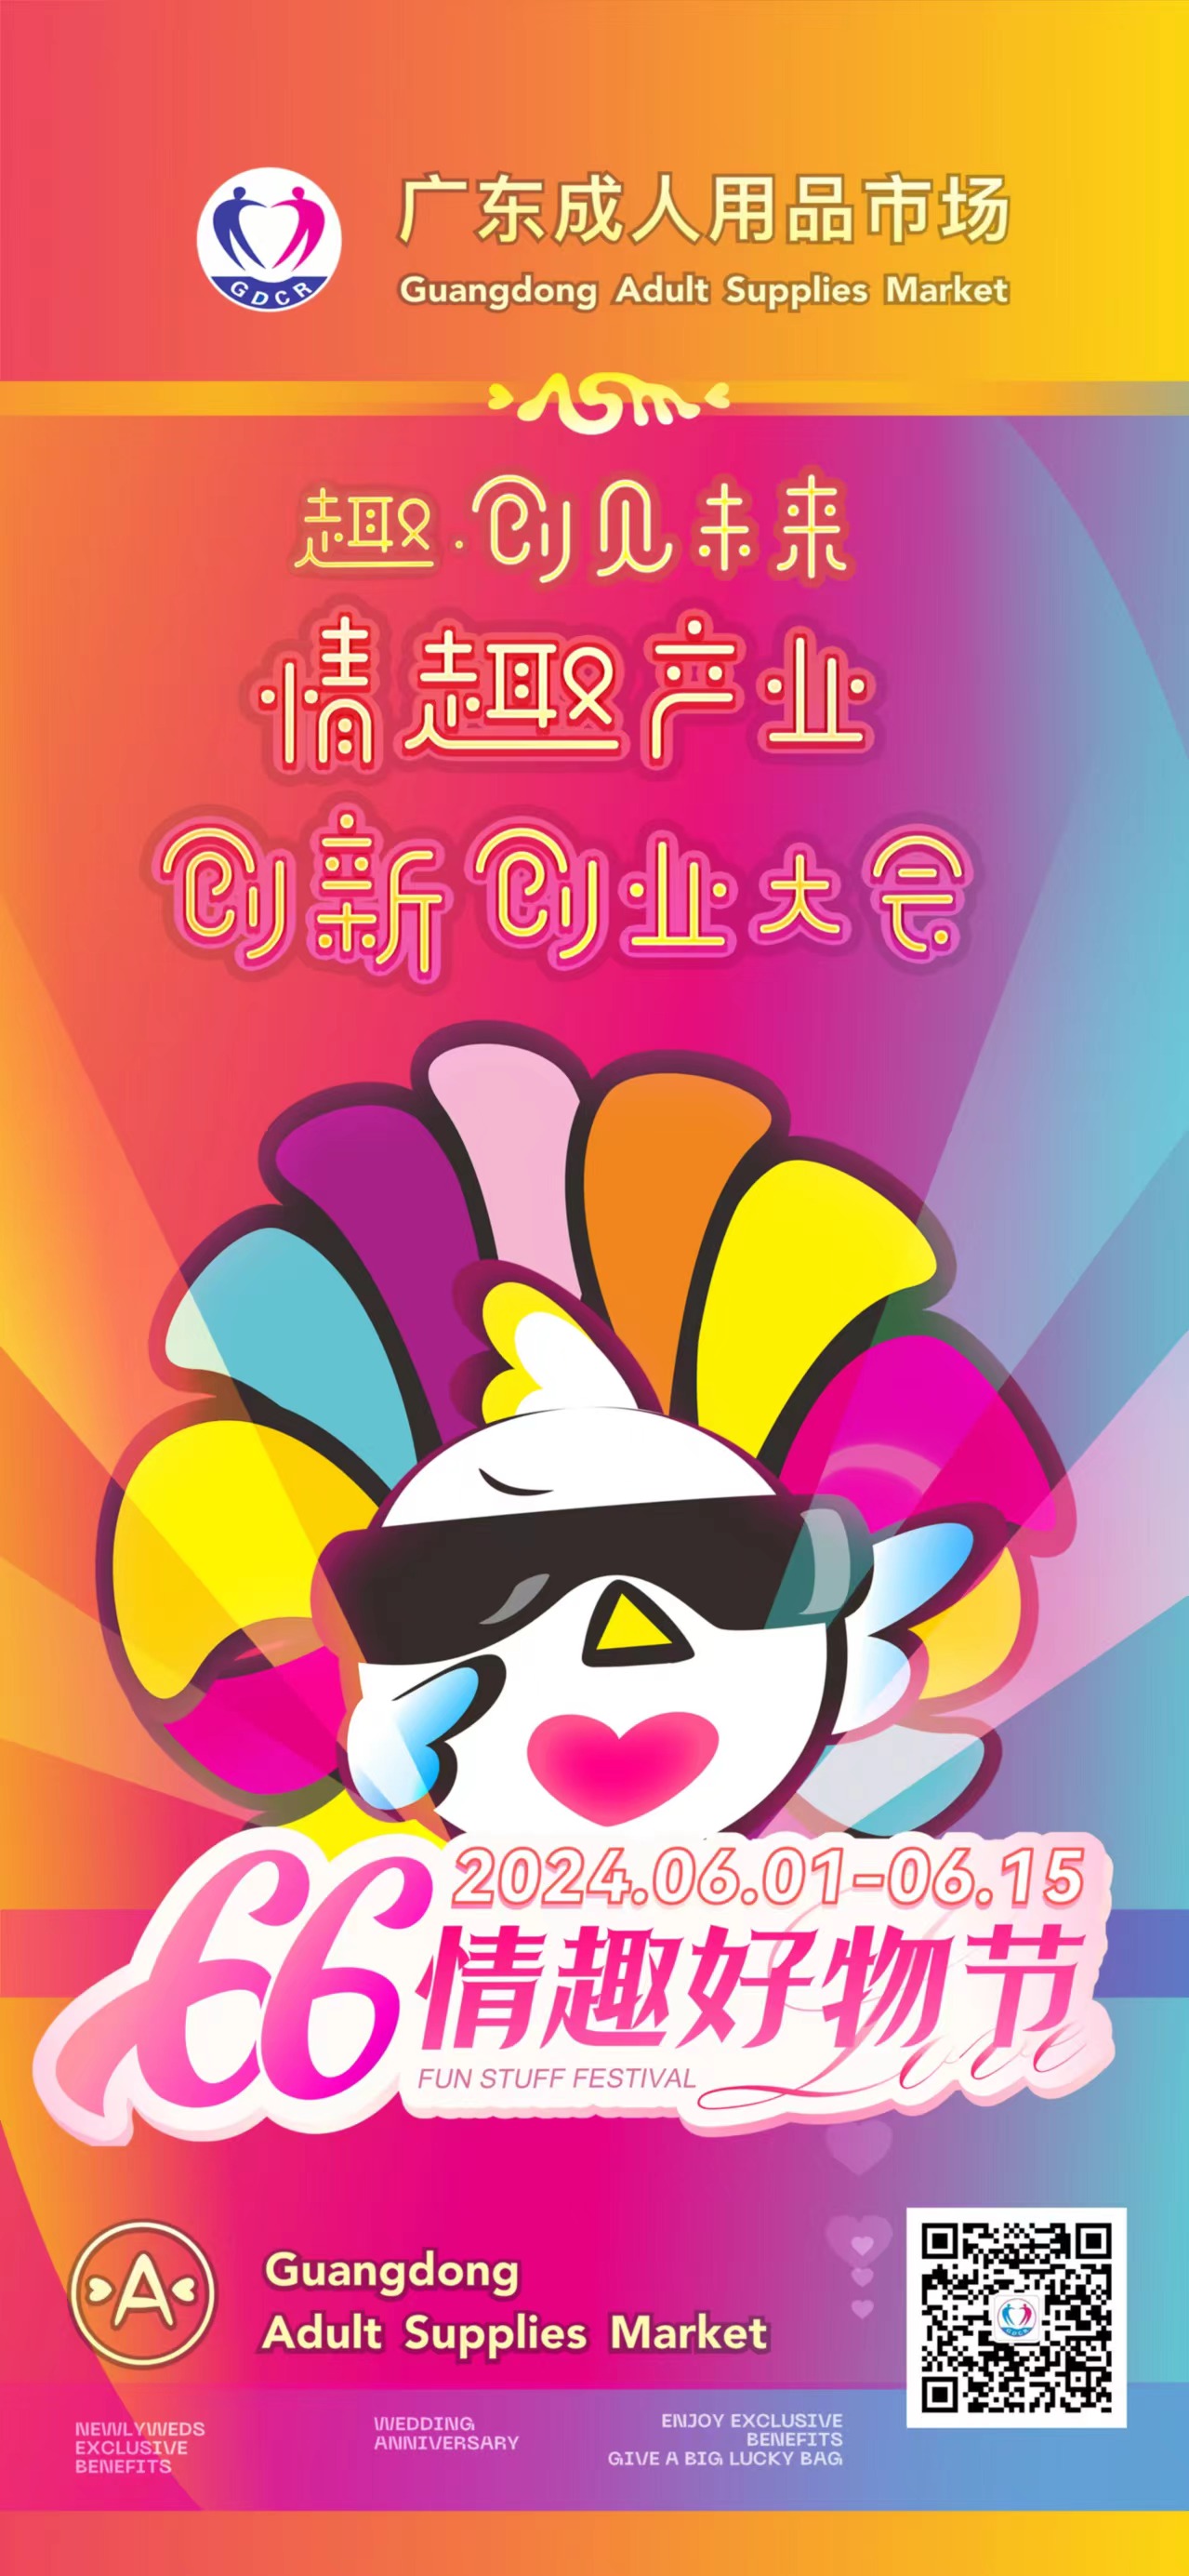 广东成人用品市场第五届“66情趣好物节”欢乐启幕(图4)